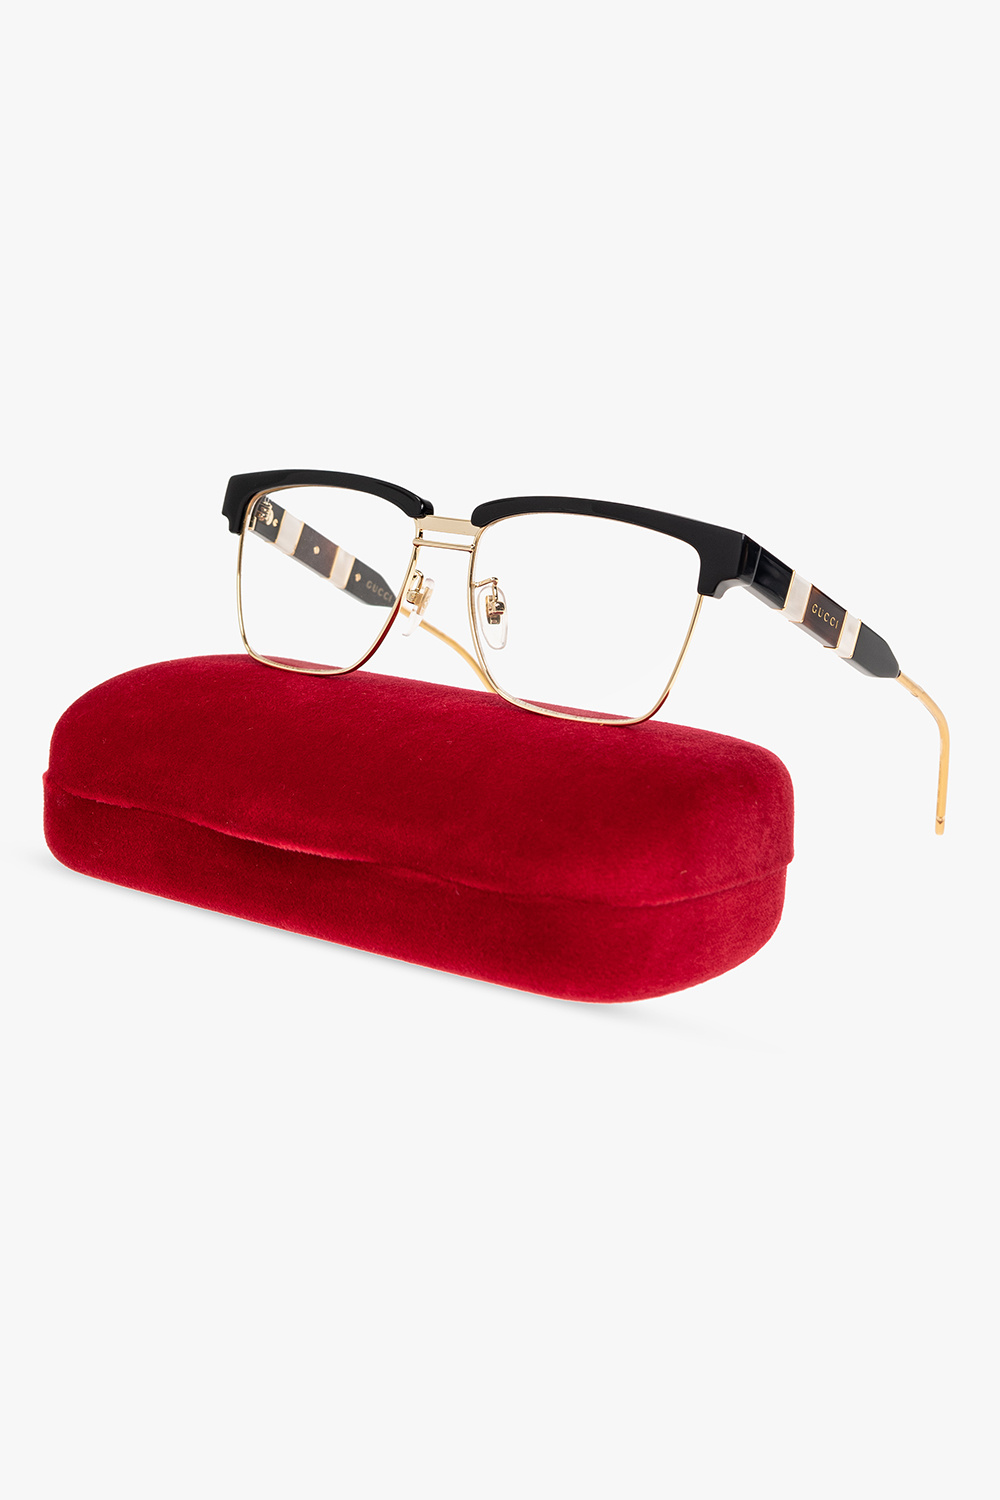 Gucci Optical glasses